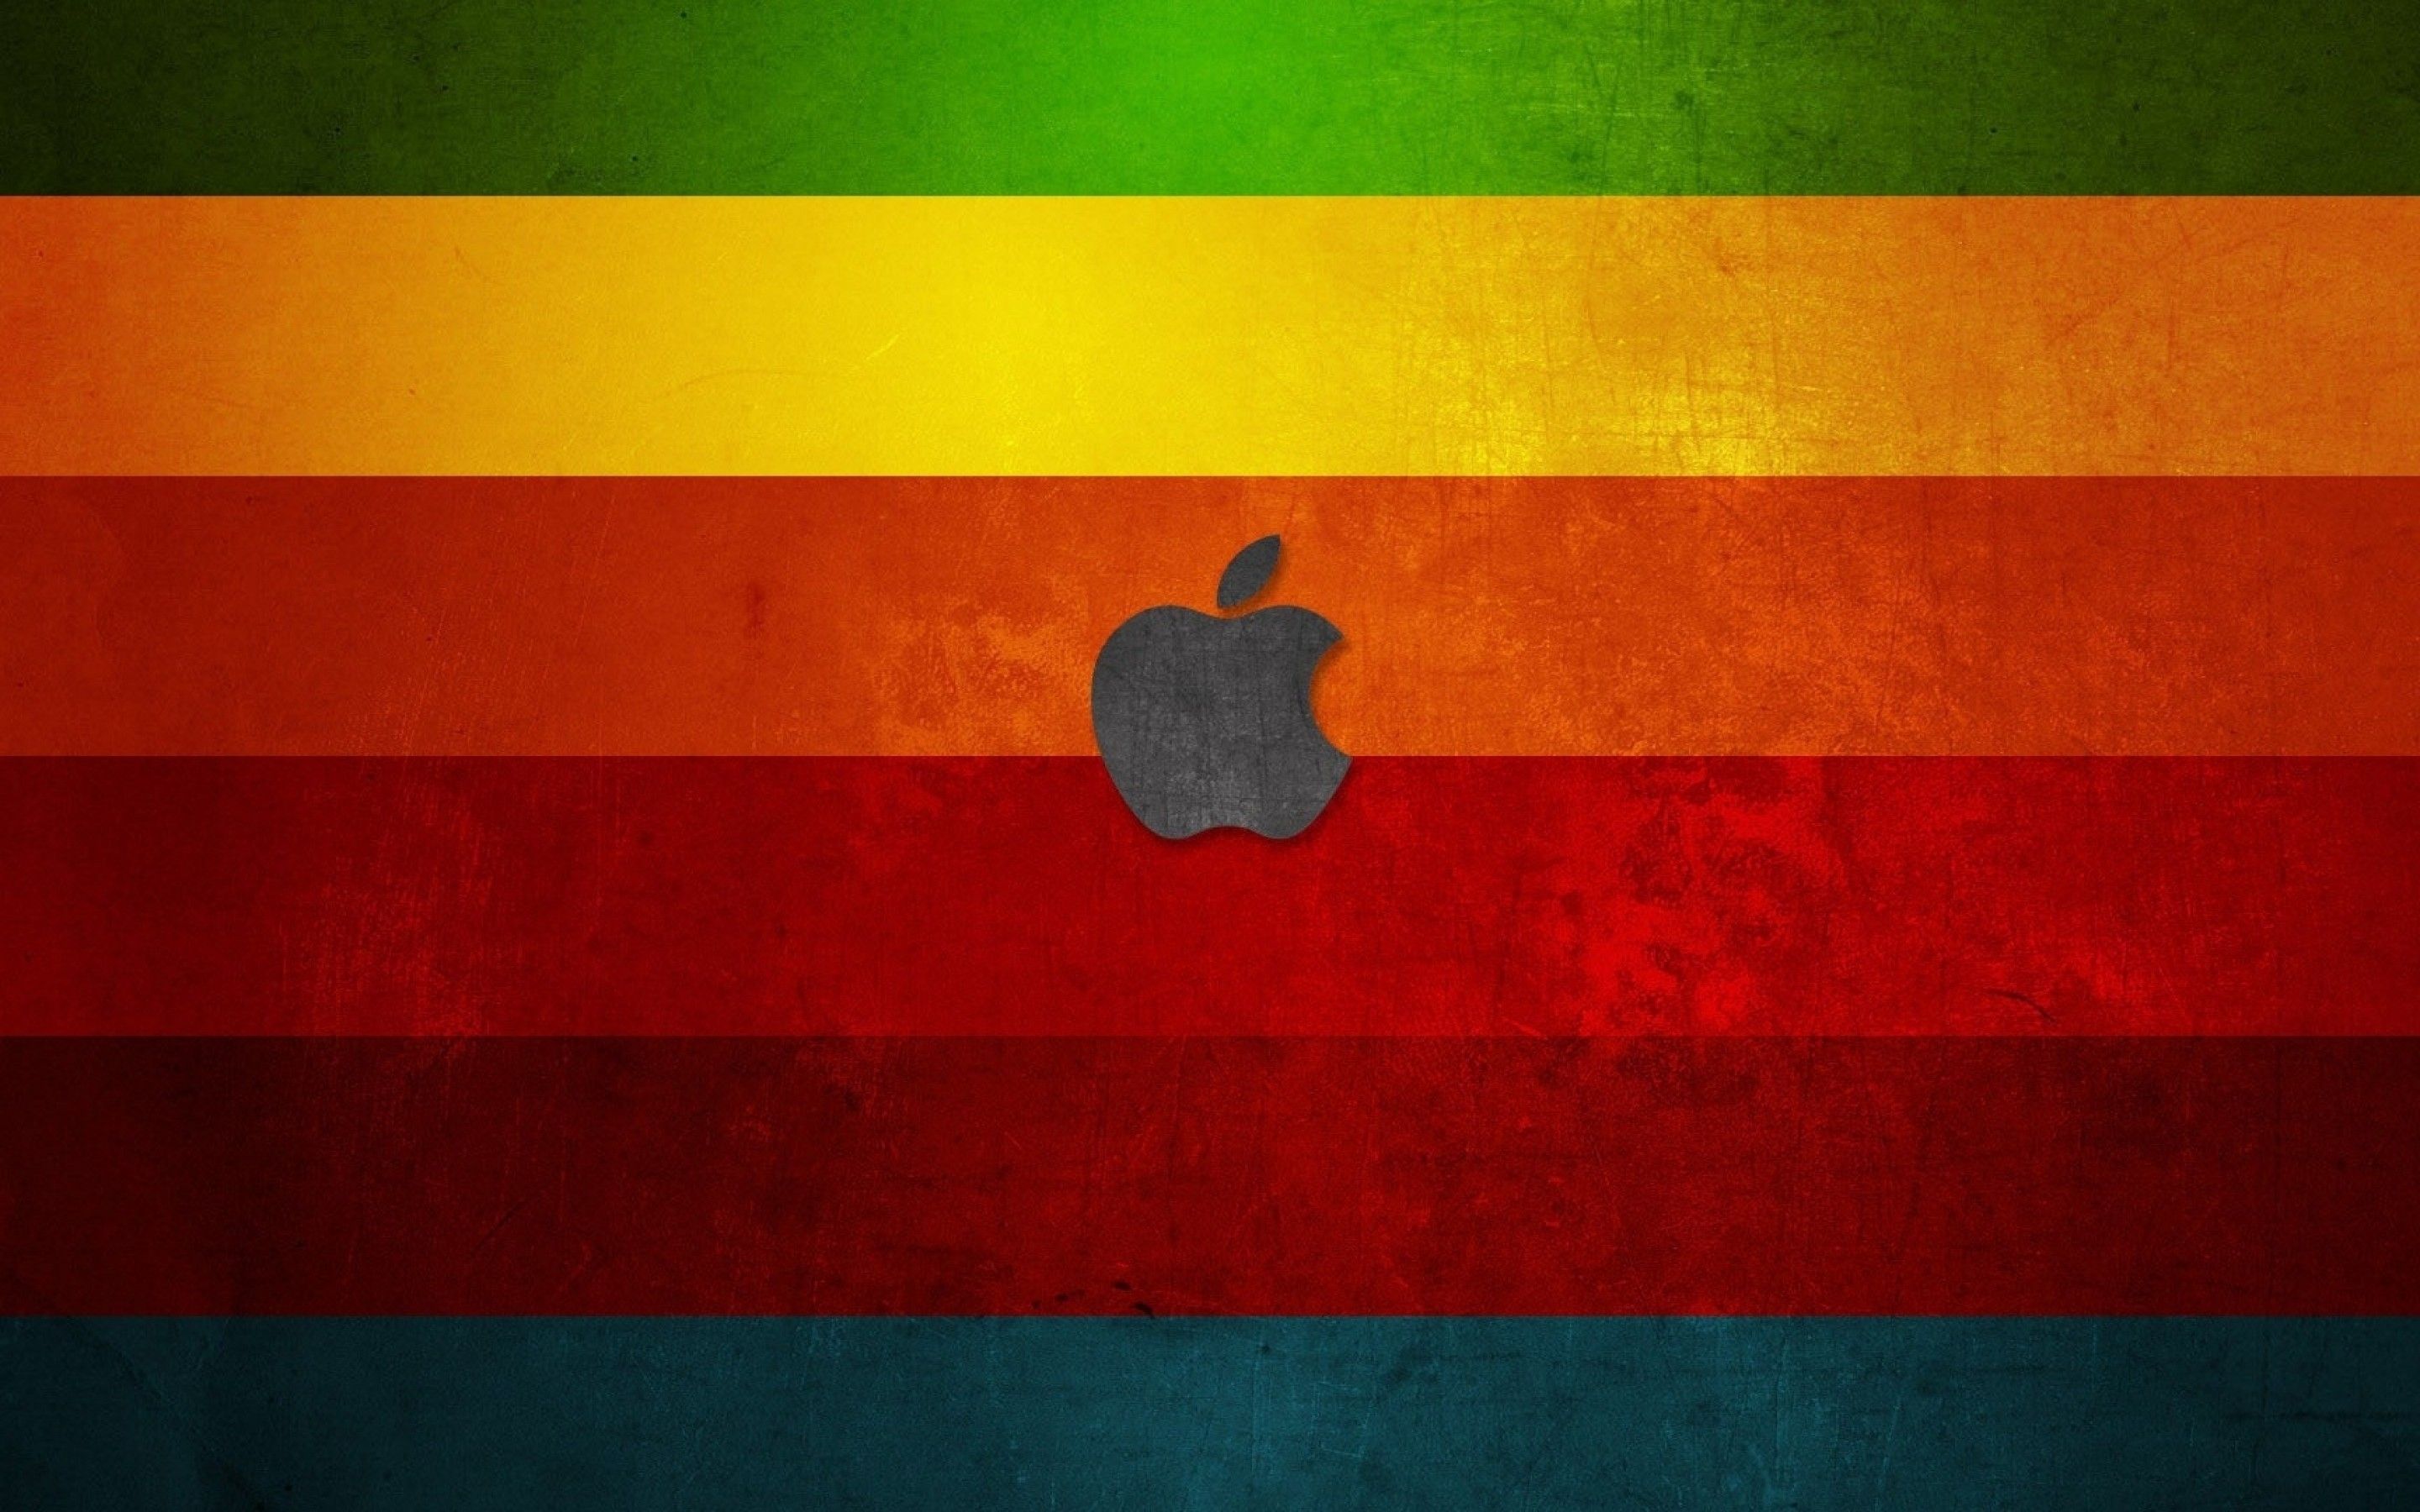 Apple Macbook Wallpaper Background